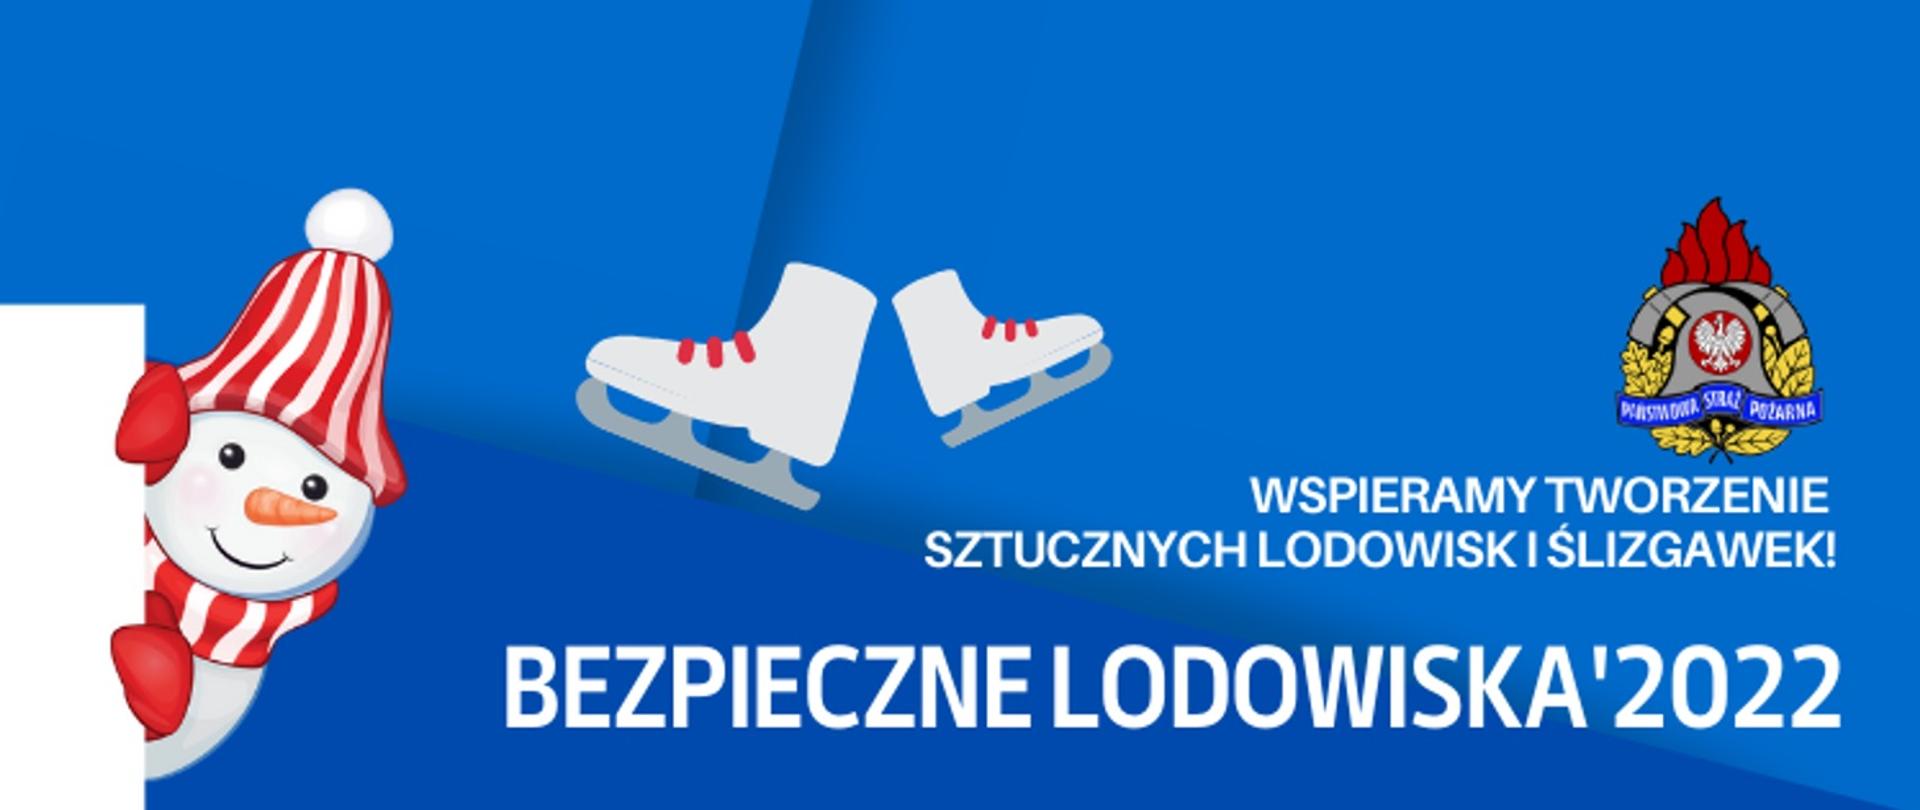 Na niebieskim tle napis Bezpieczne Lodowiska '2022 i logo PSP oraz bałwan.